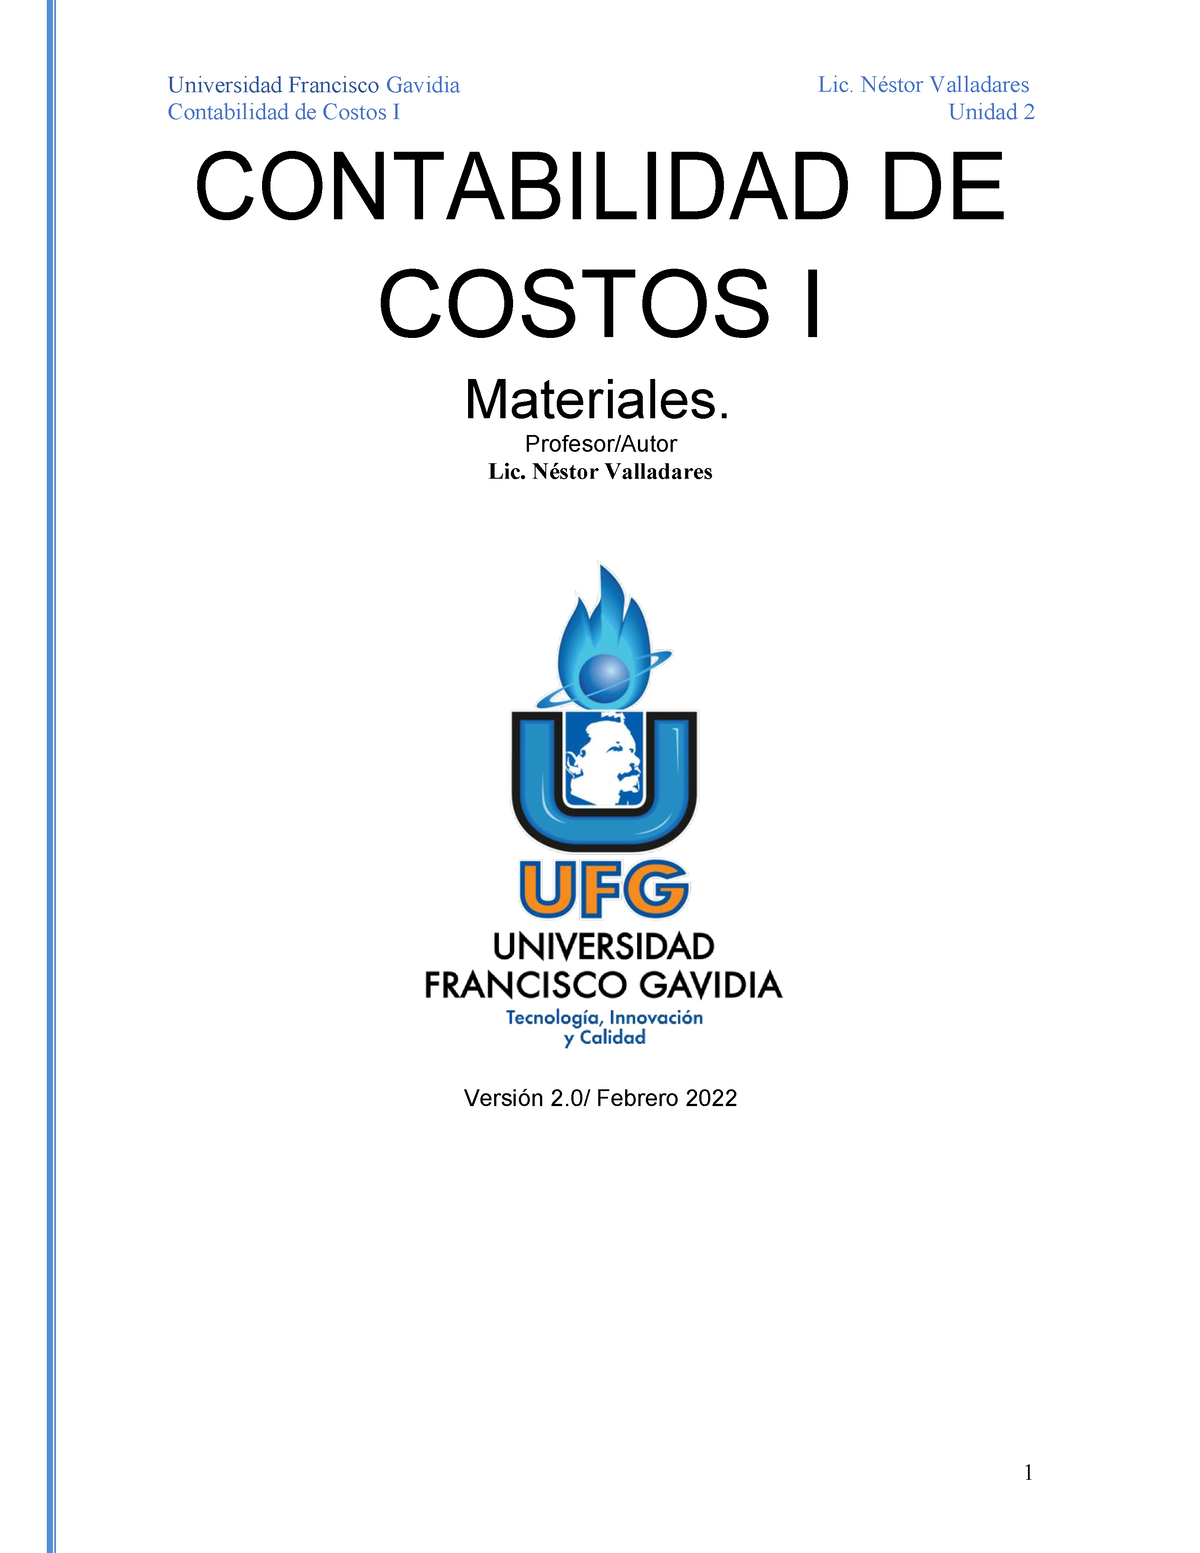 Materiales De Contabilidad De Costos Contabilidad De Costos I Unidad 2 Contabilidad De Costos 5303